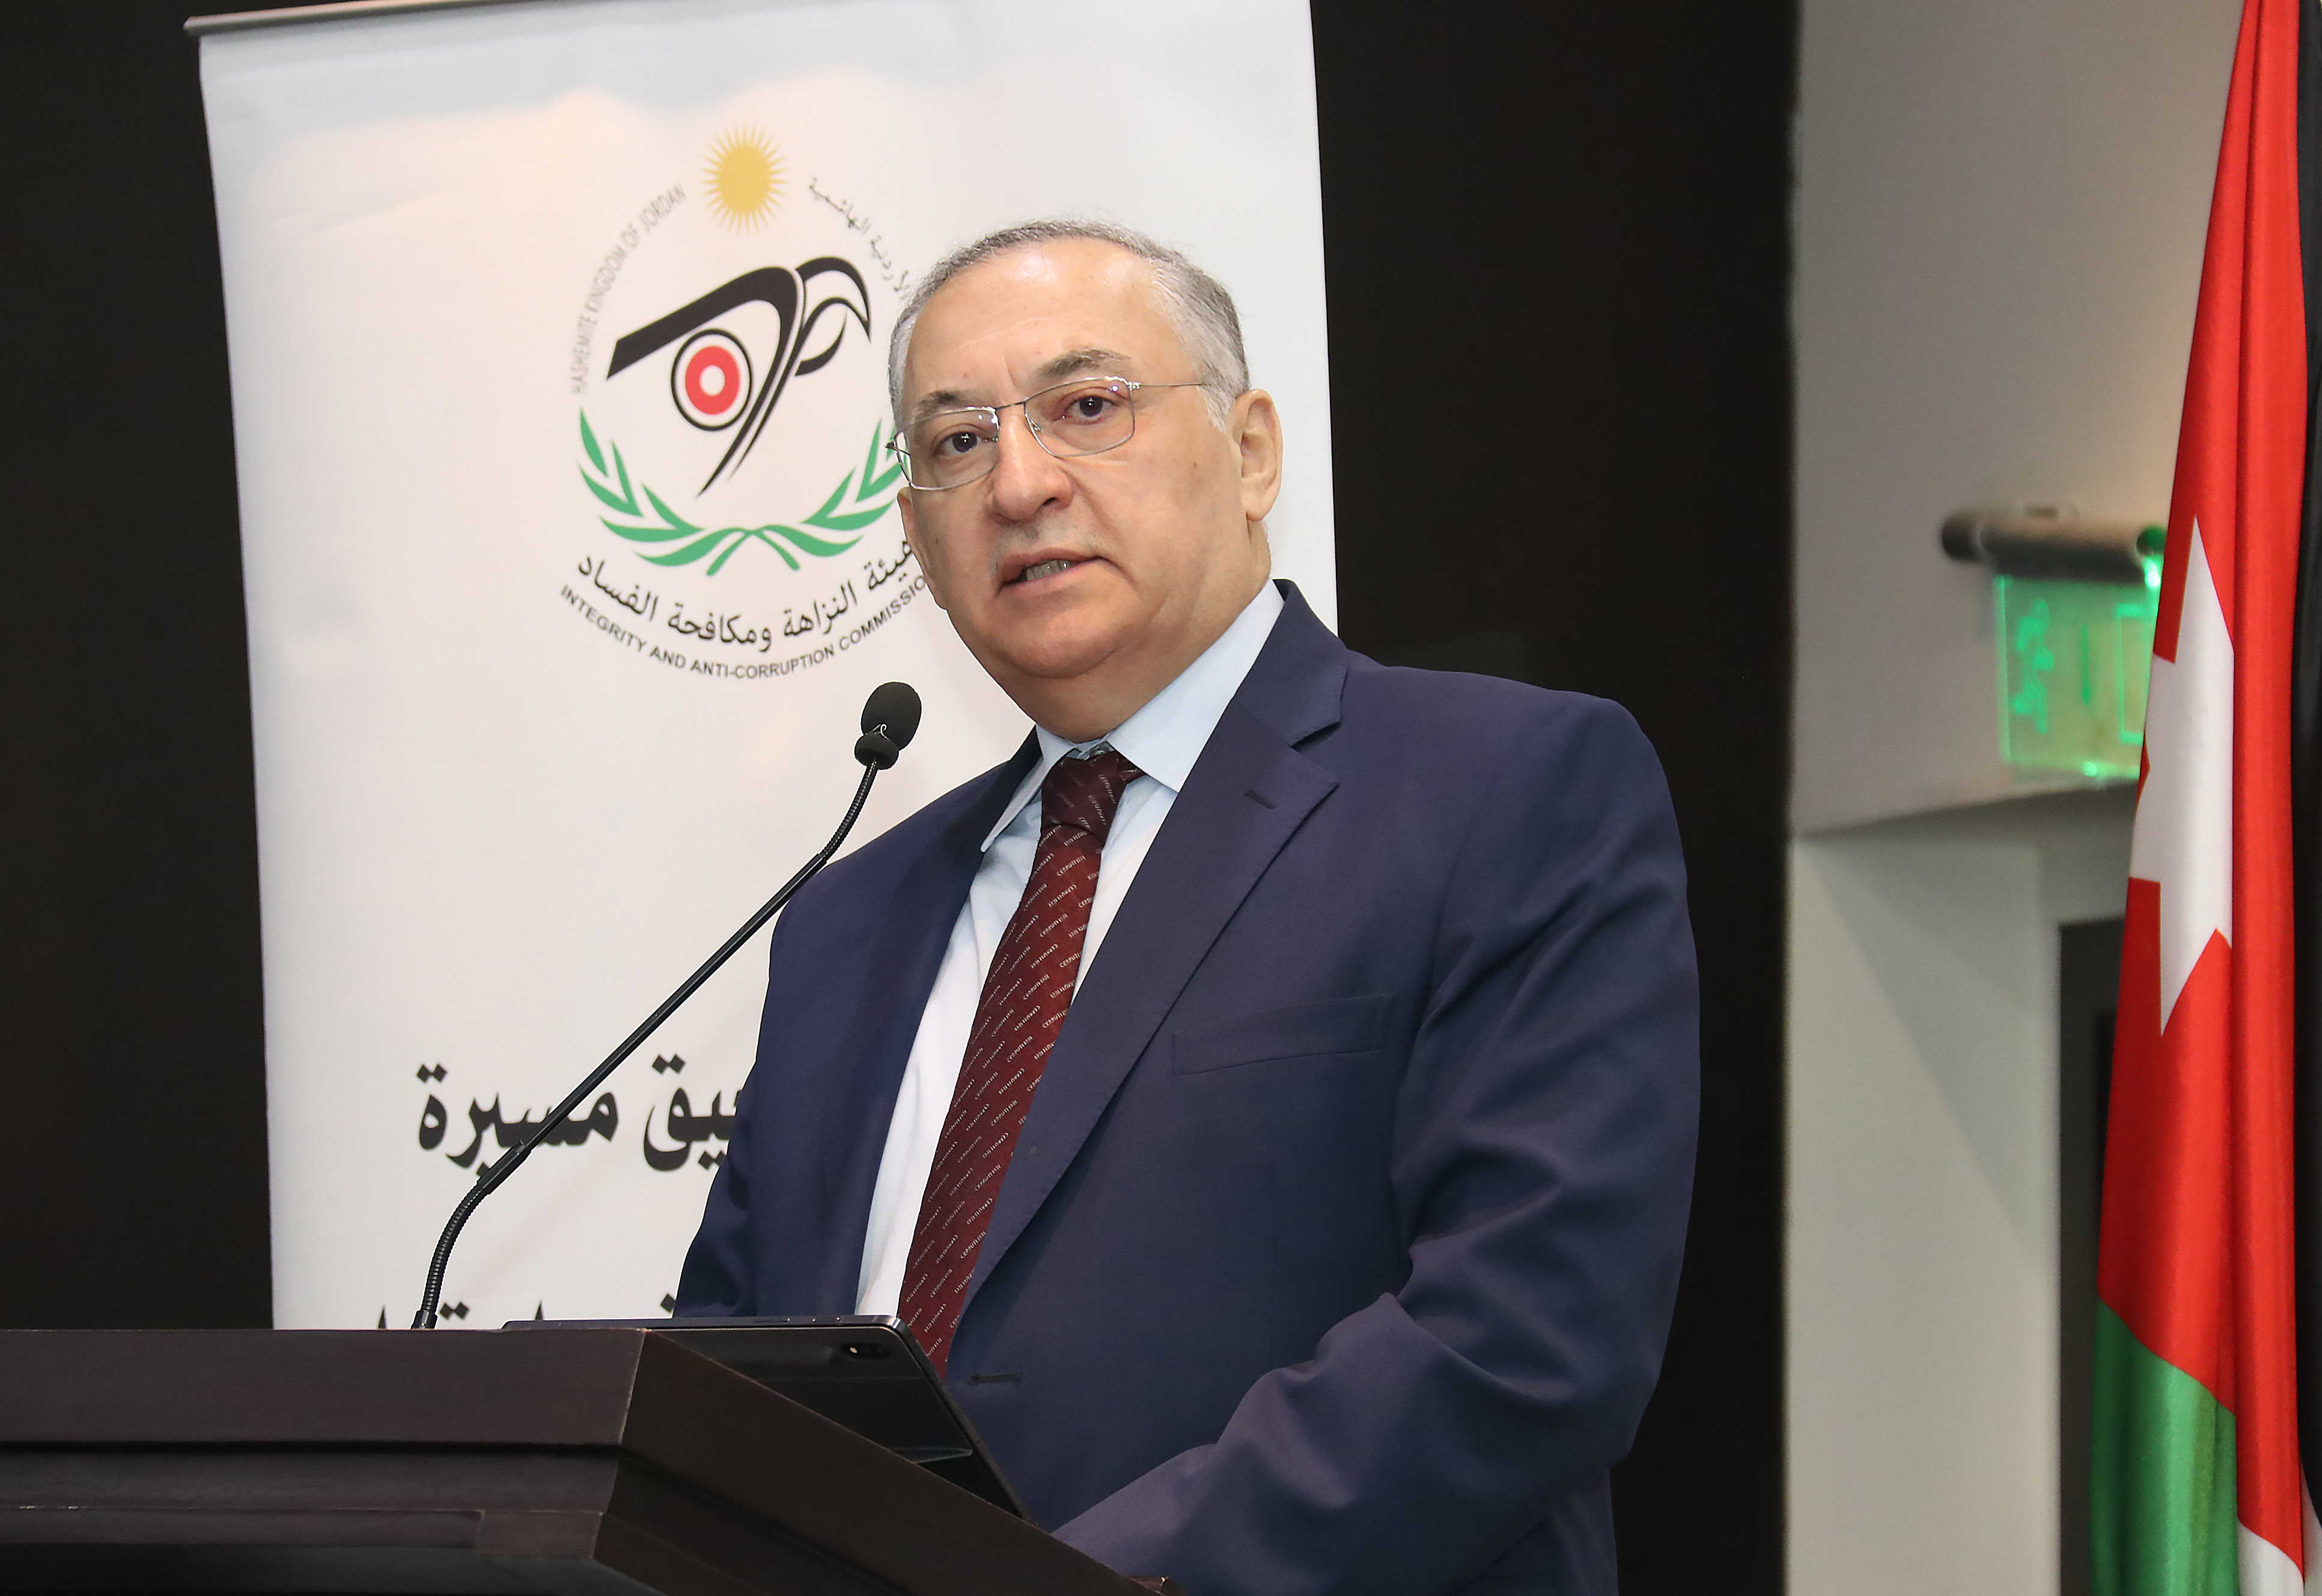 رئيس مجلس هيئة النزاهة ومكافحة الفساد يحاضر في جامعة عمان العربية9